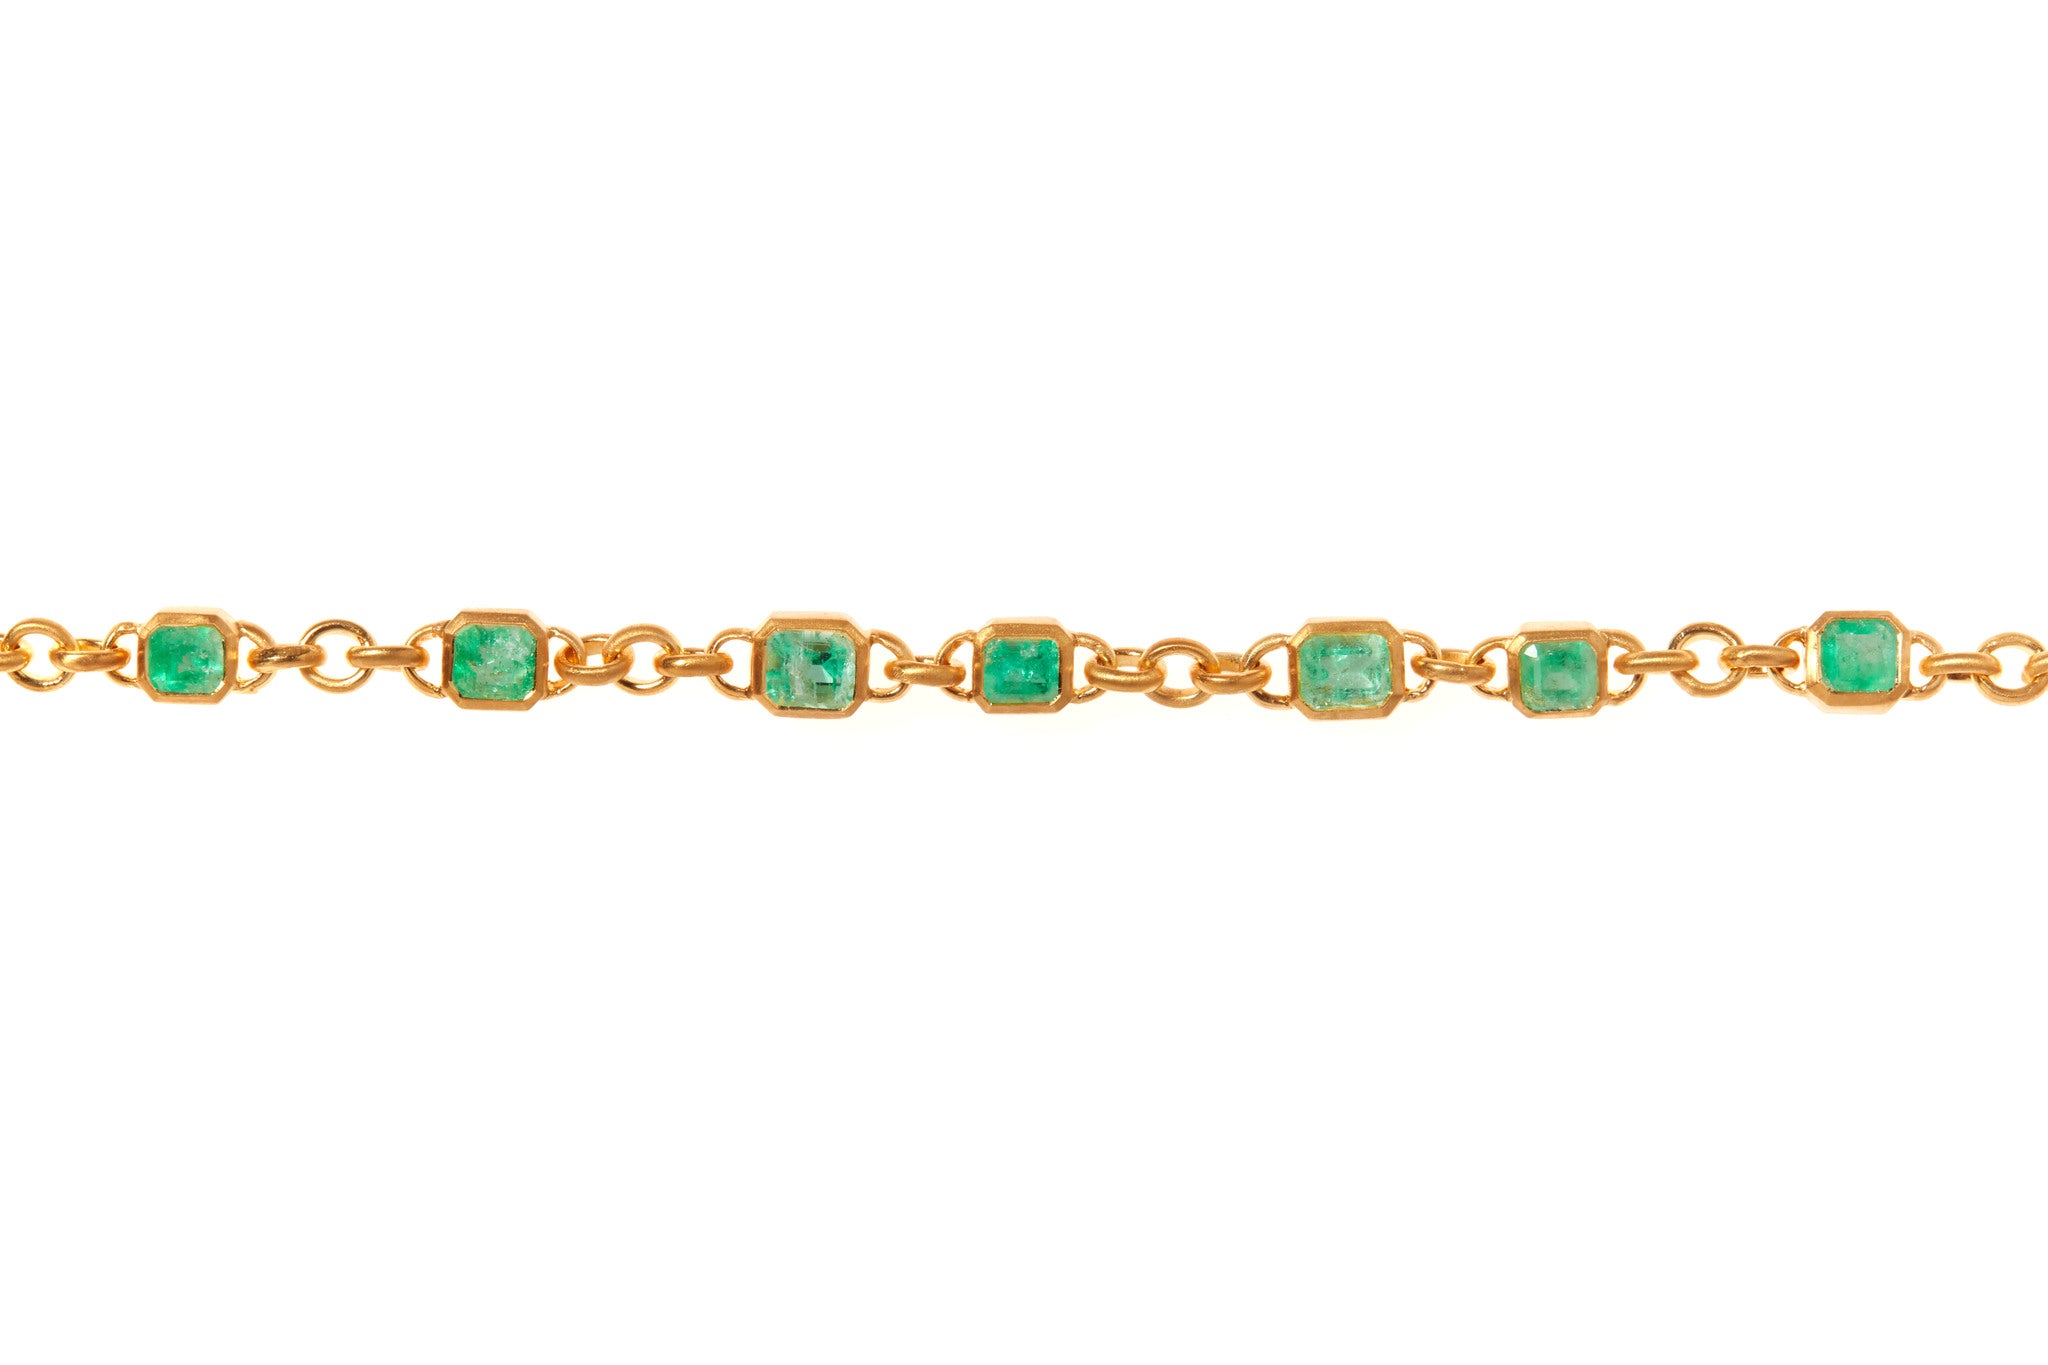 darius jewels Darius Khonsary jewelry 18k yellow gold mint emerald fairy chain bracelet